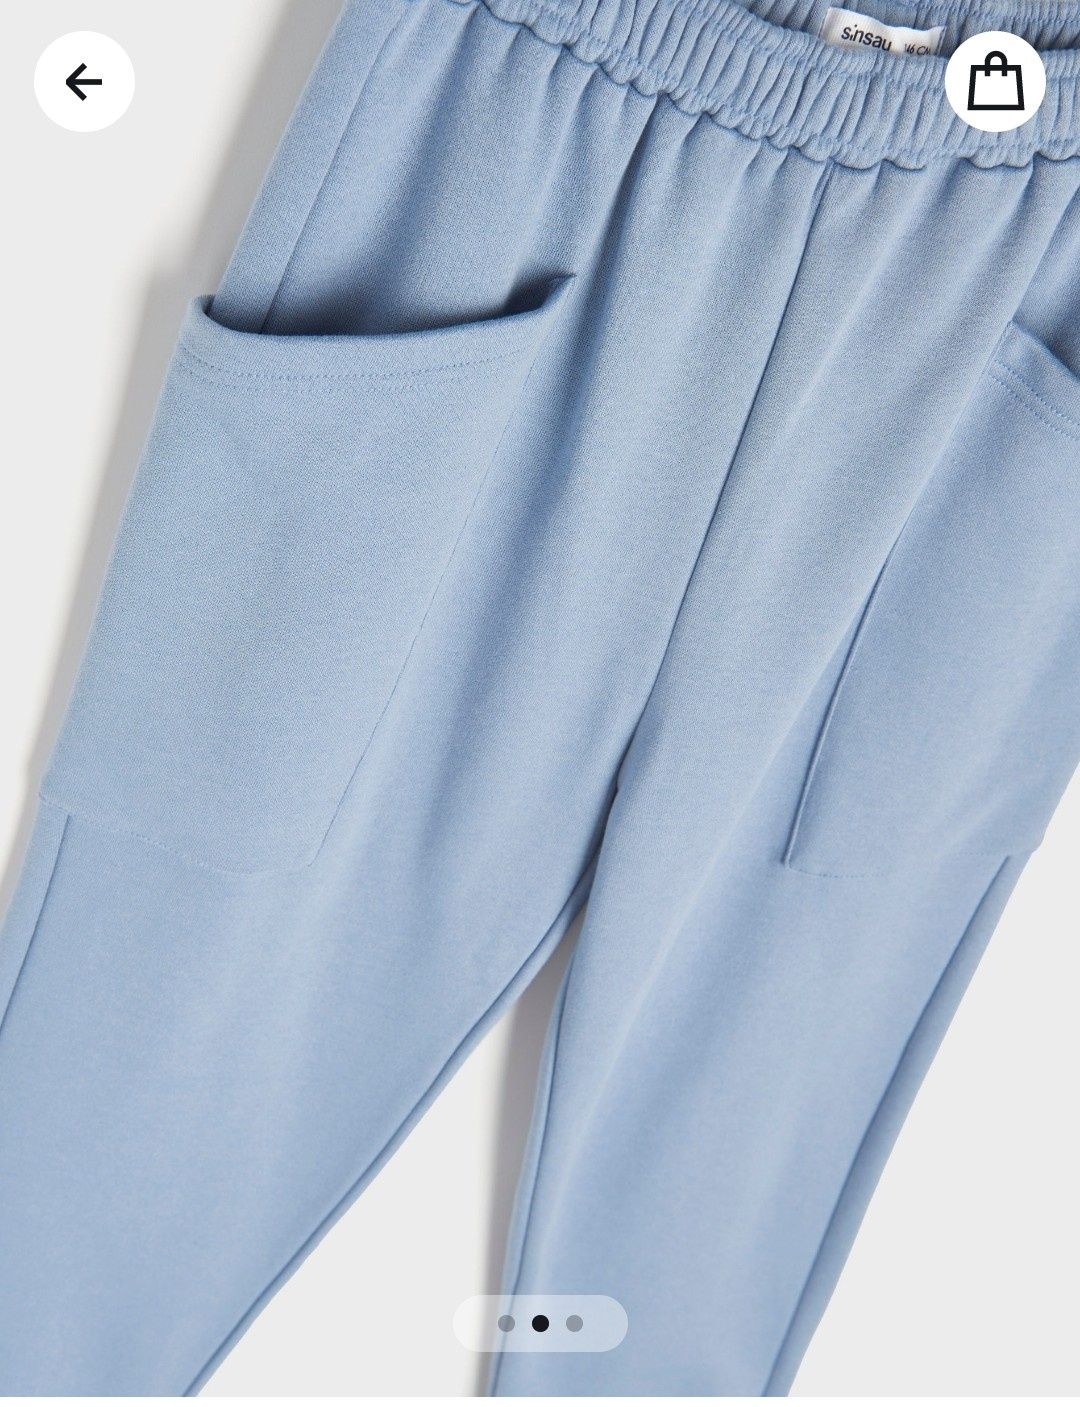 Nowe spodnie dresowe bawełniane błękitne ocieplane dresy sportowe 36